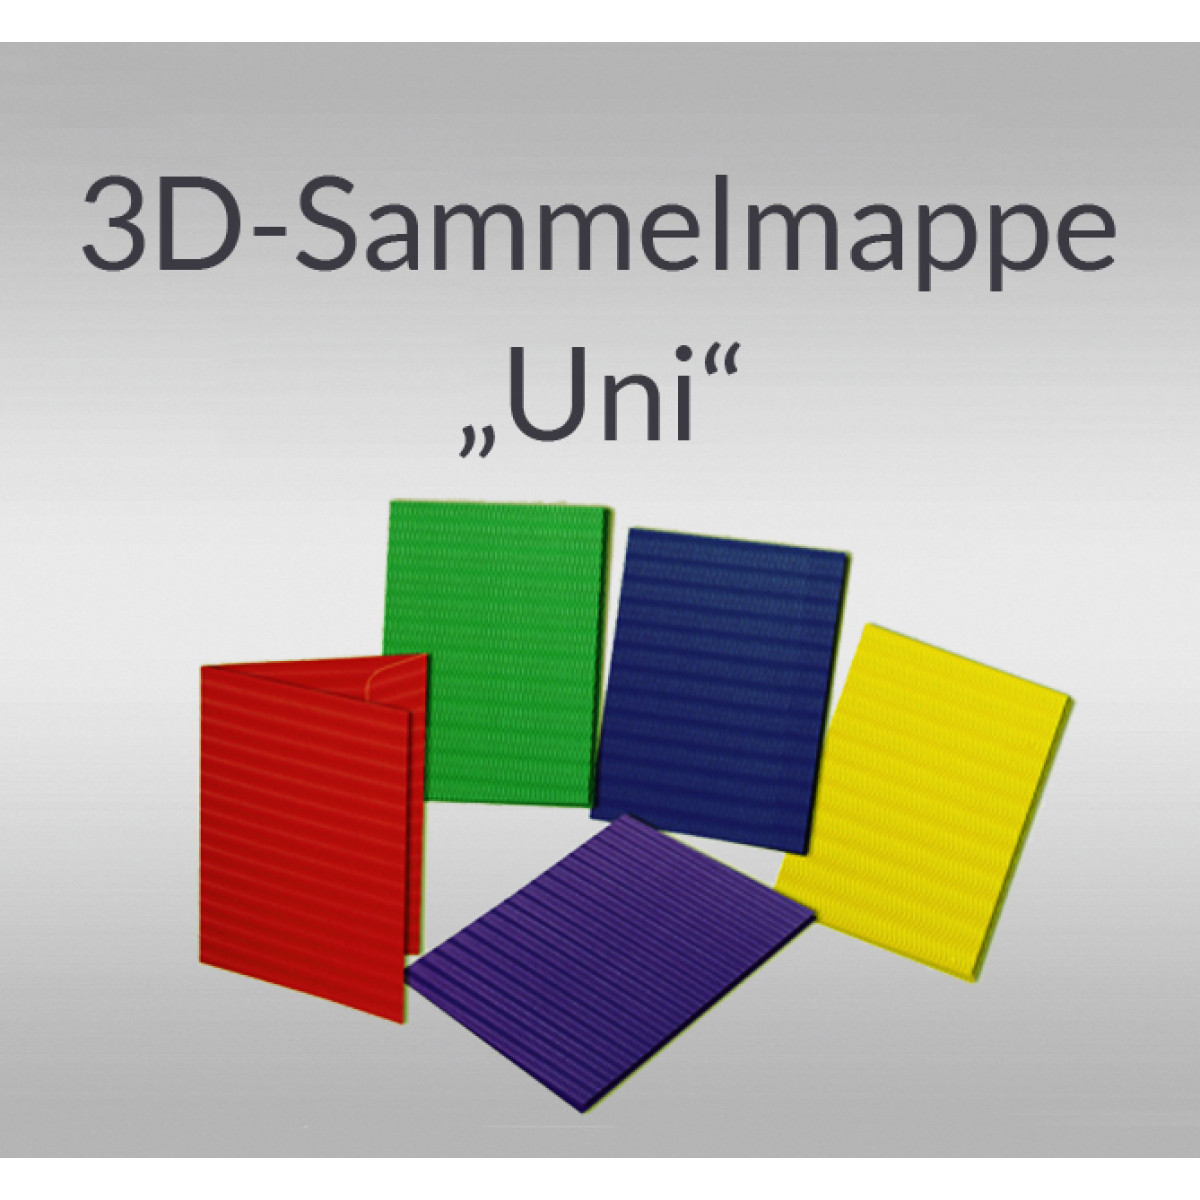 3D-Sammelmappe "Uni" DIN A3